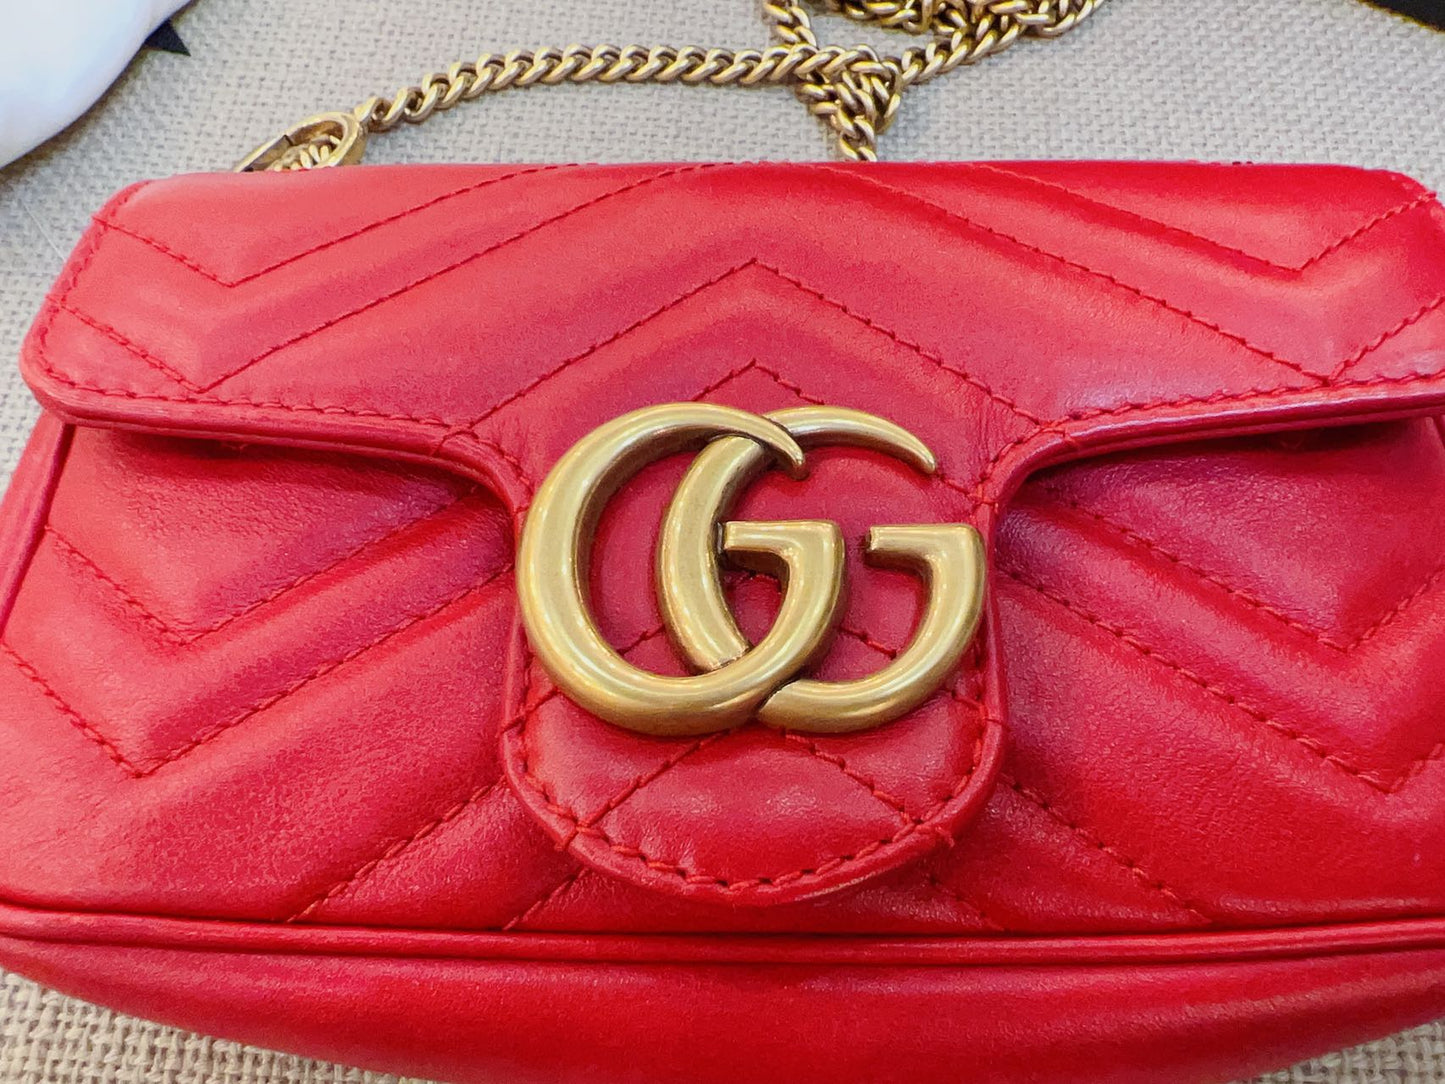 Gucci Marmont Super Mini Bag